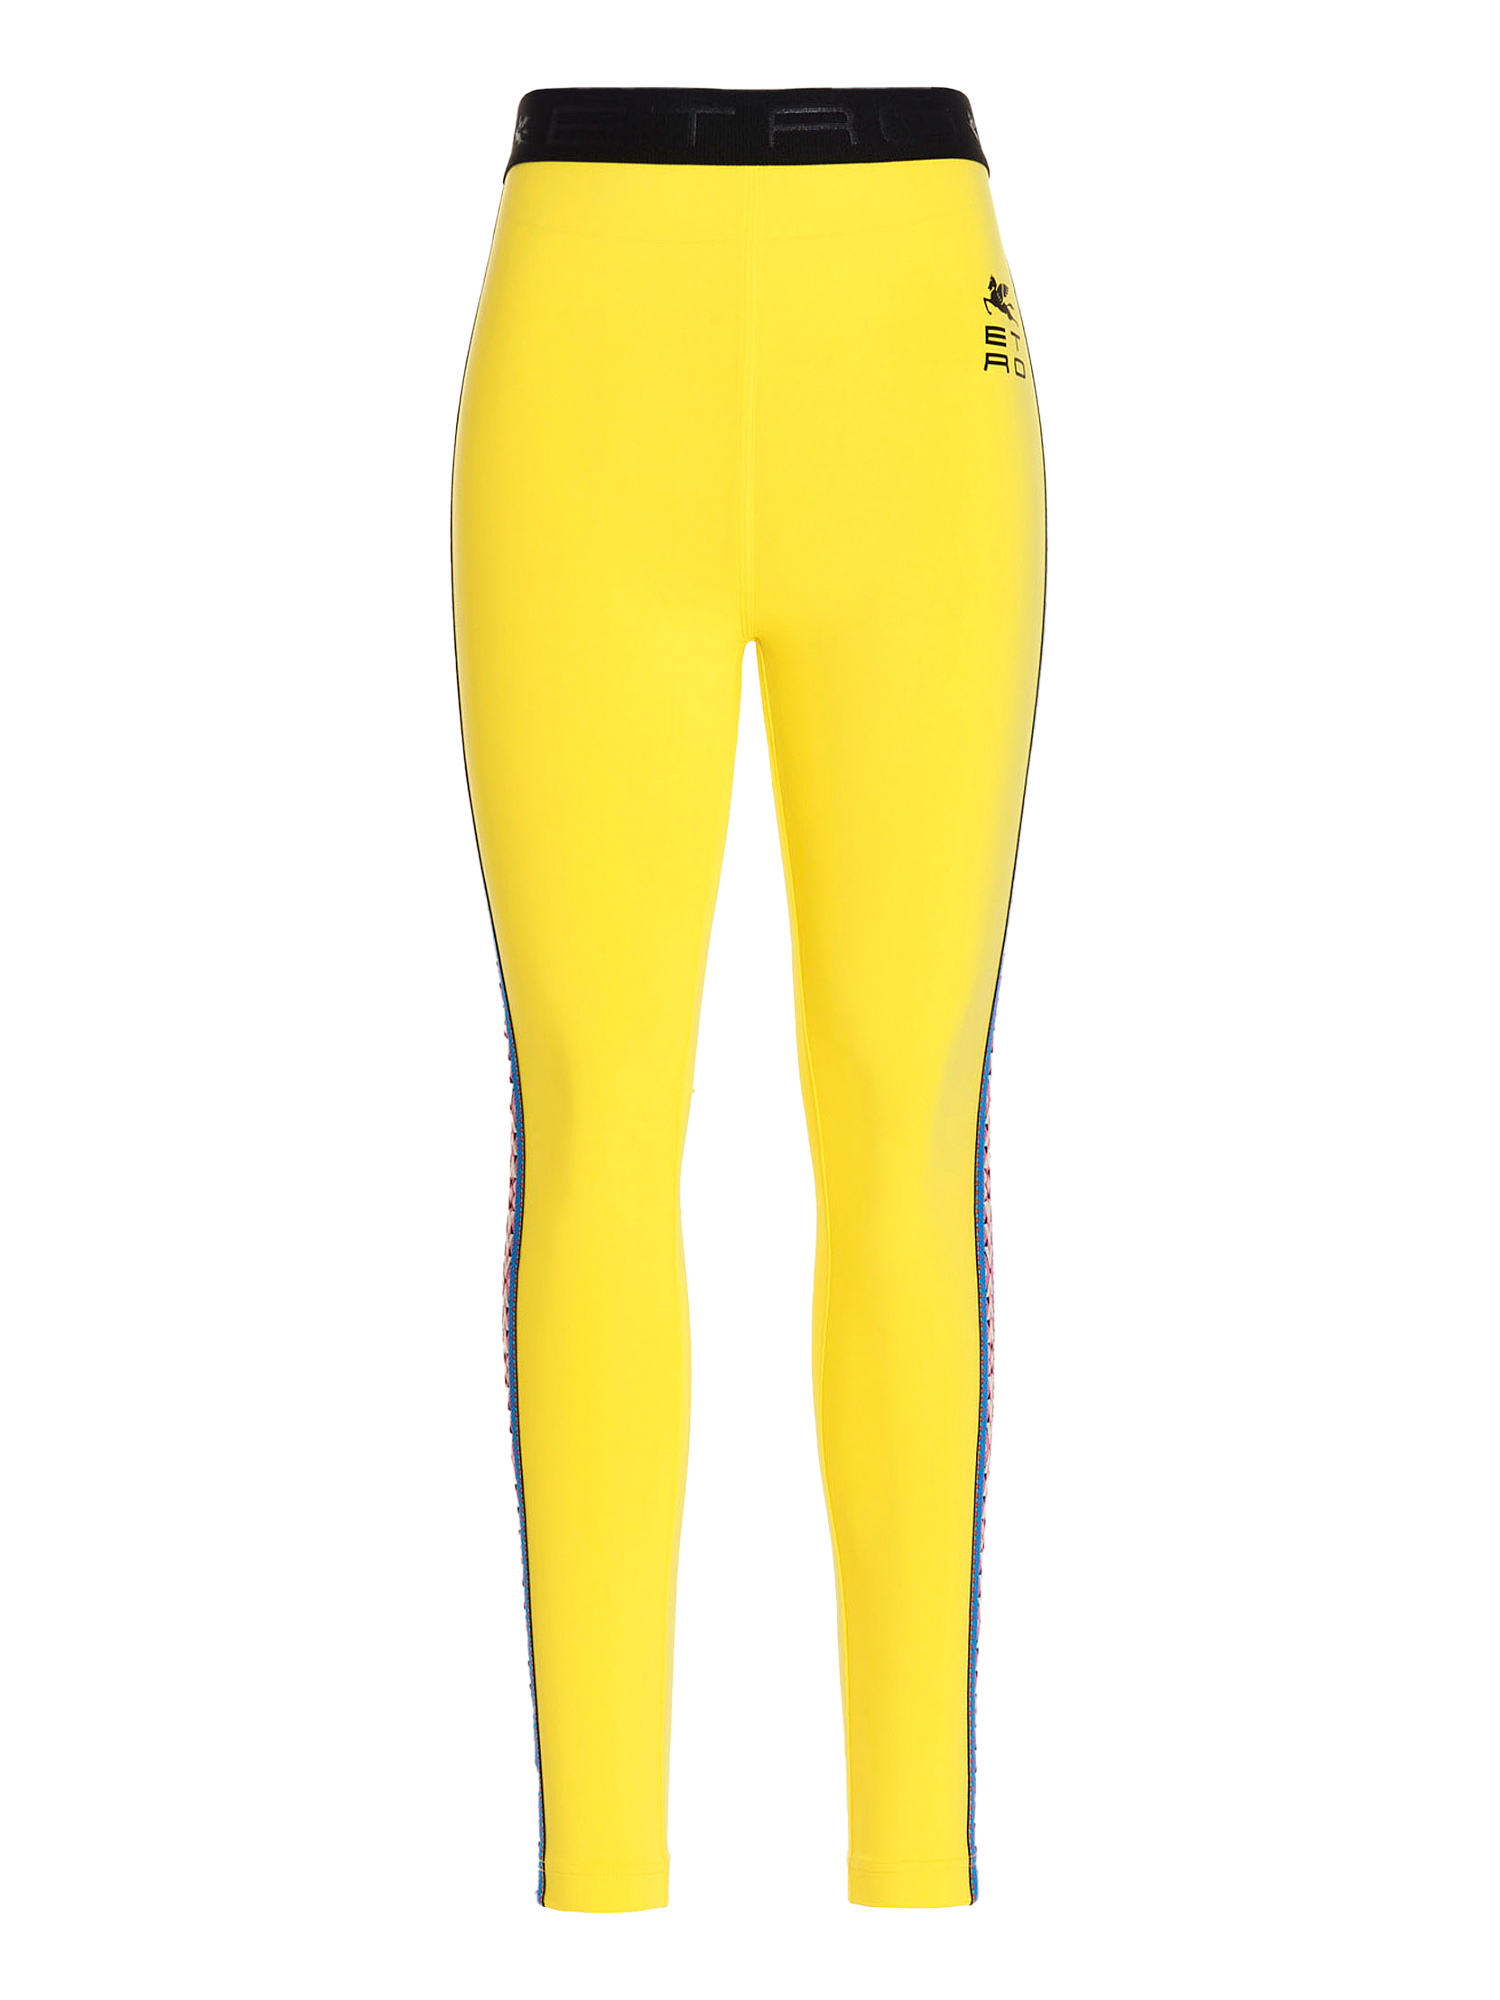 Pantalons Pour Femme - Etro - En Synthetic Fibers Yellow - Taille:  -